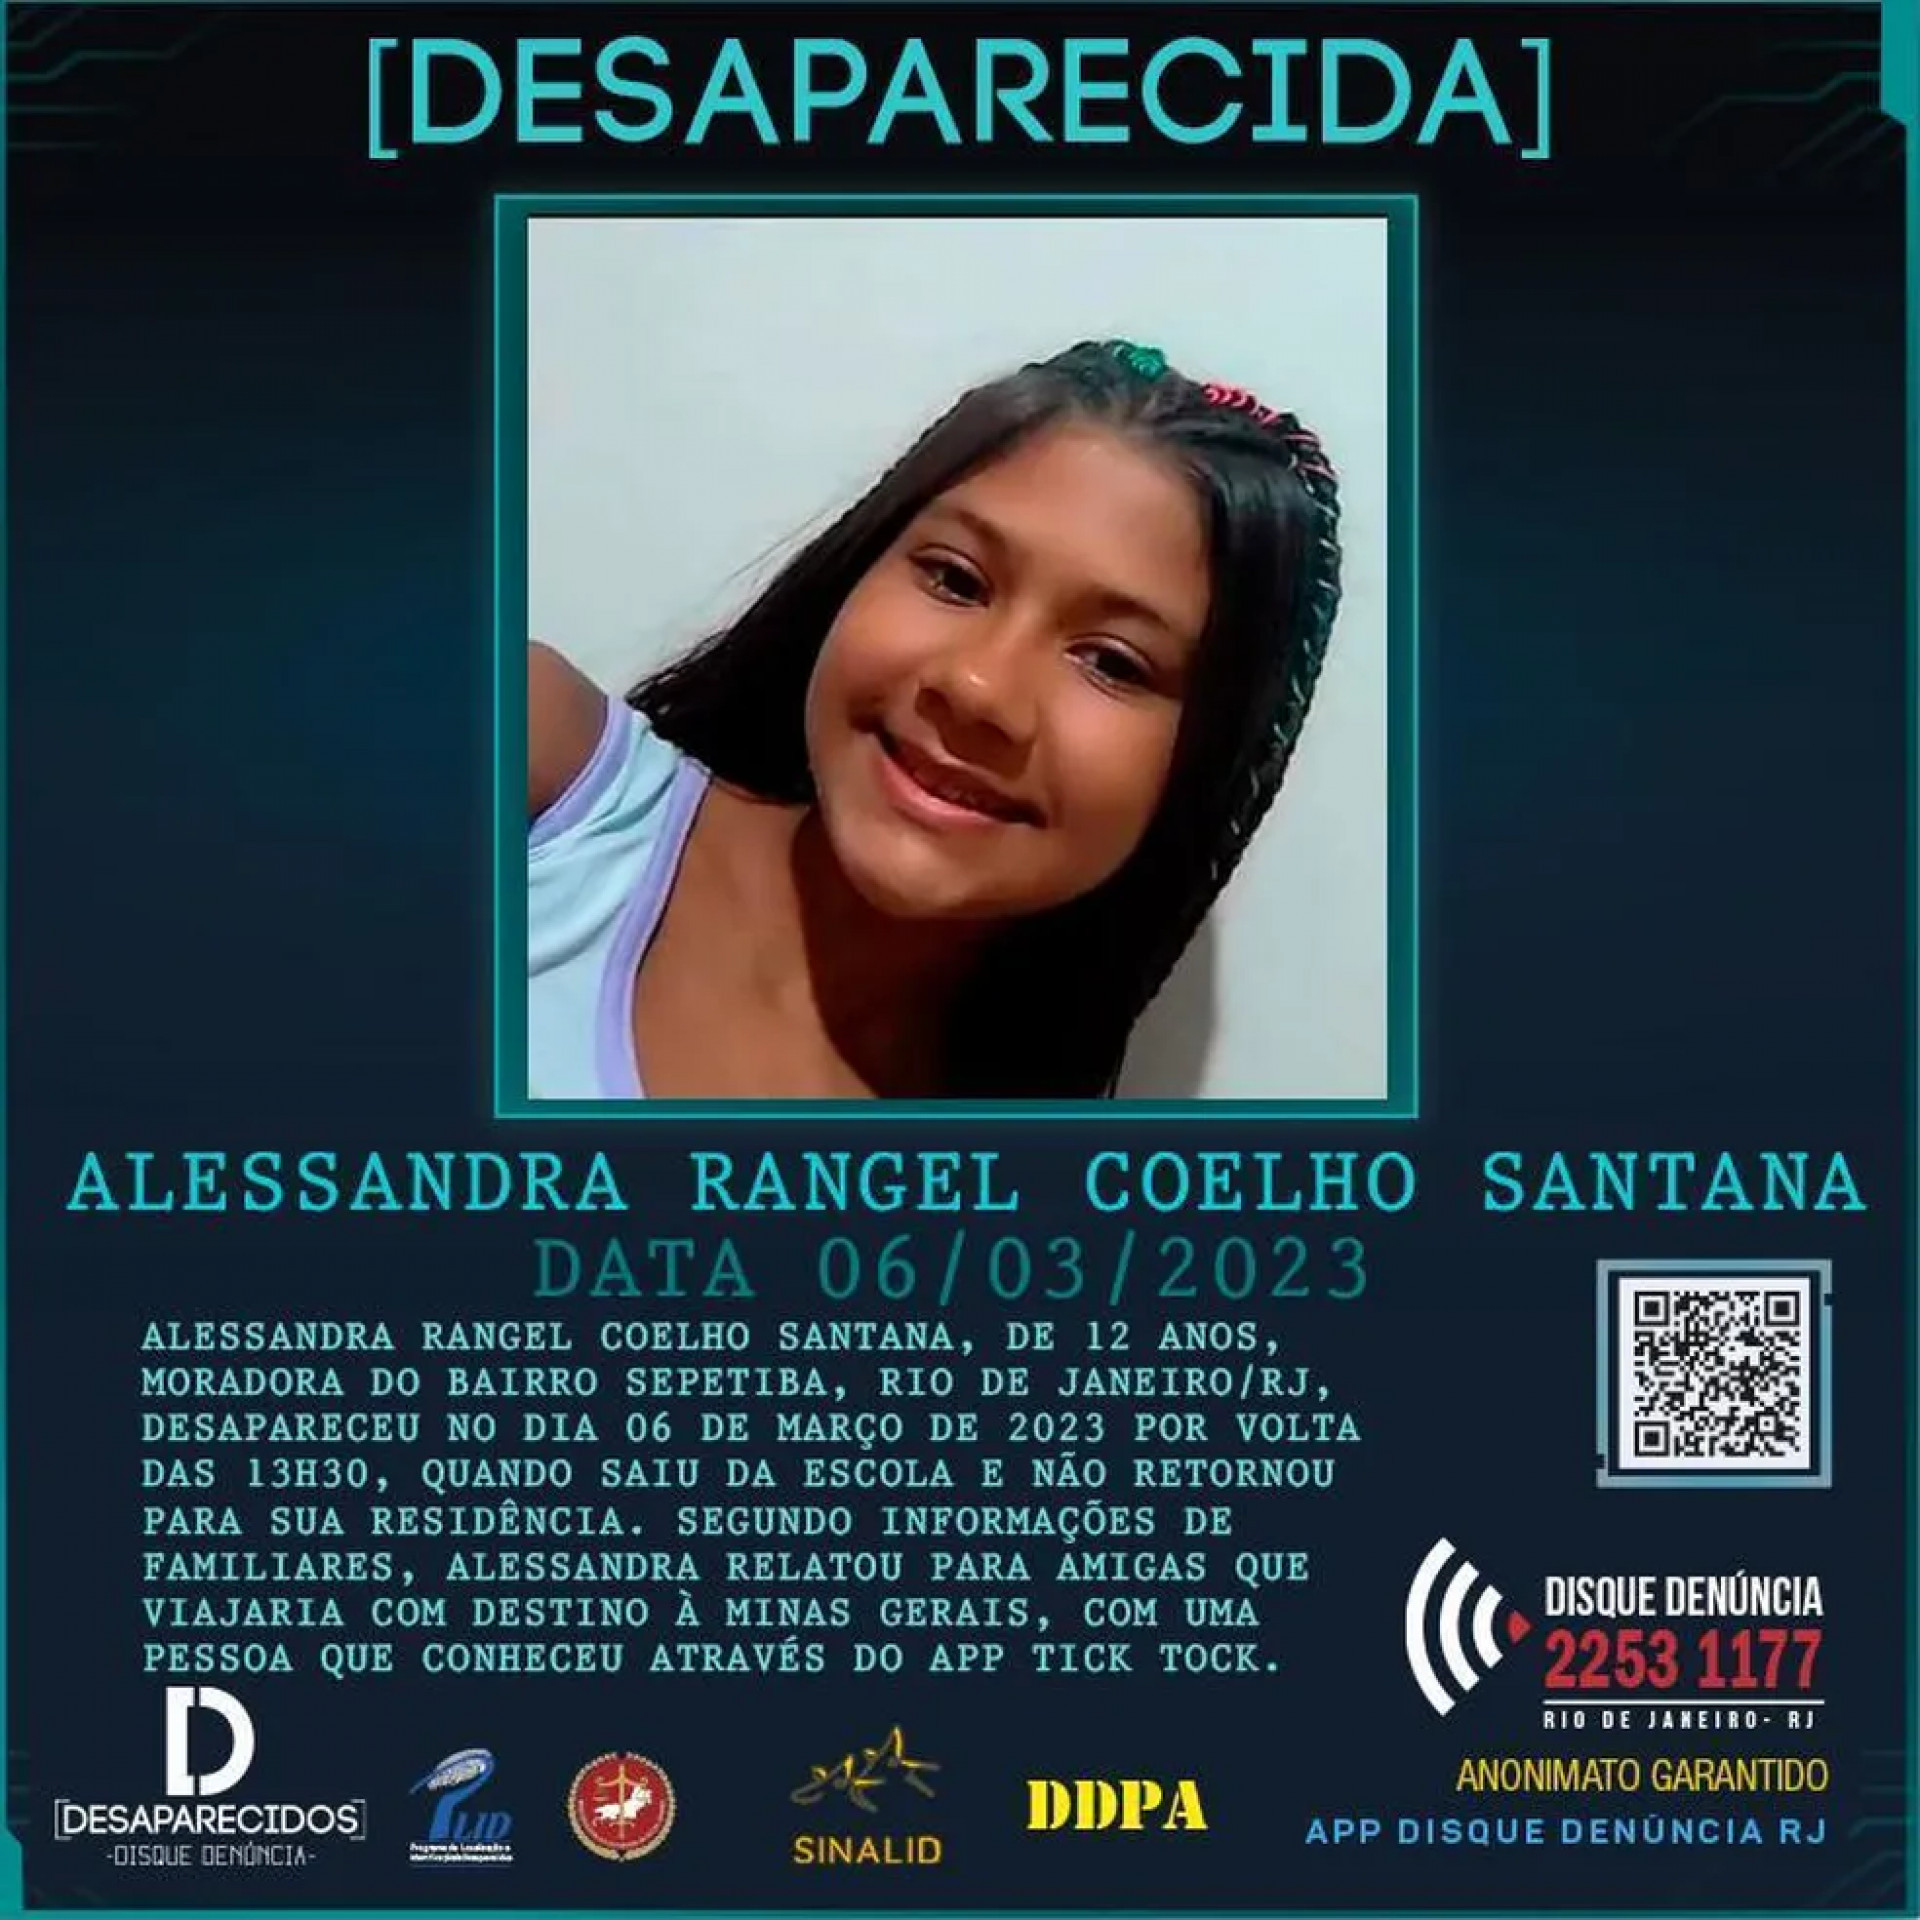 Alessandra Rangel Coelho Santana, de 12 anos, está desaparecida desde segunda-feira (6). Ela foi vista pela última vez a caminho da escola, em Sepetiba, na Zona Oeste do Rio - Divulgação